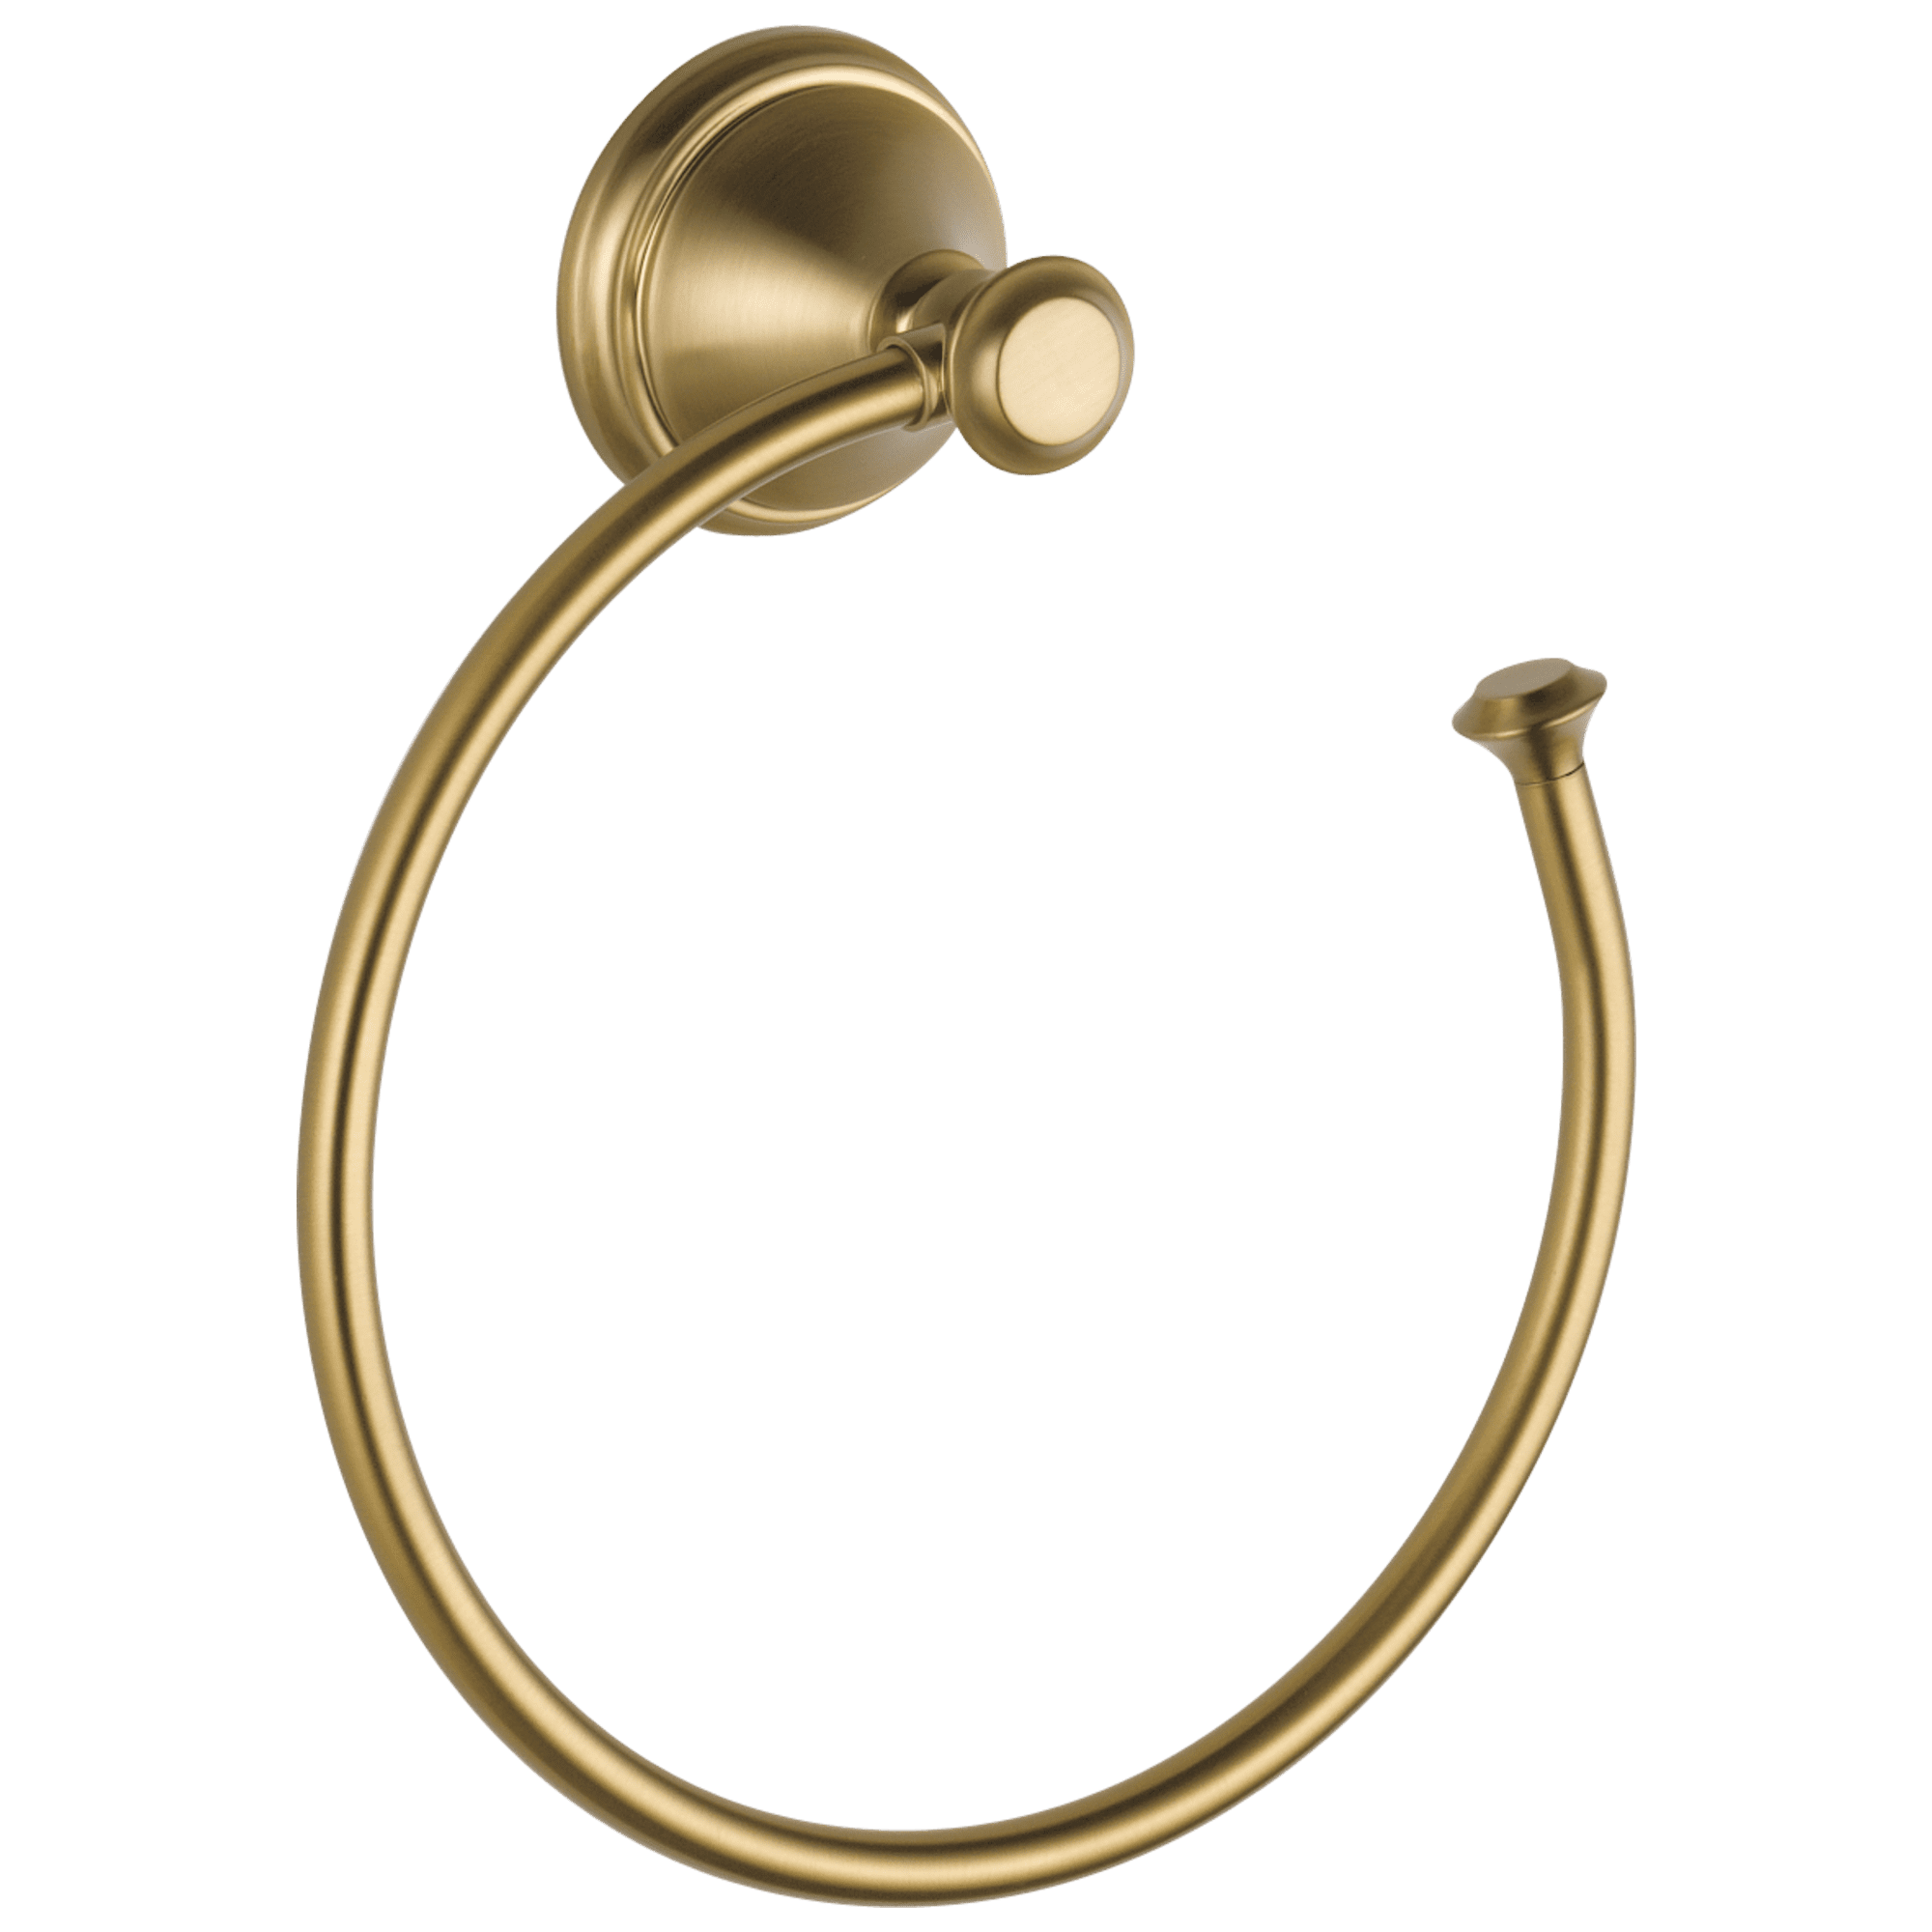 Champagne Bronze BESTILL Stainless Steel Rustproof Bathroom Towel Ring